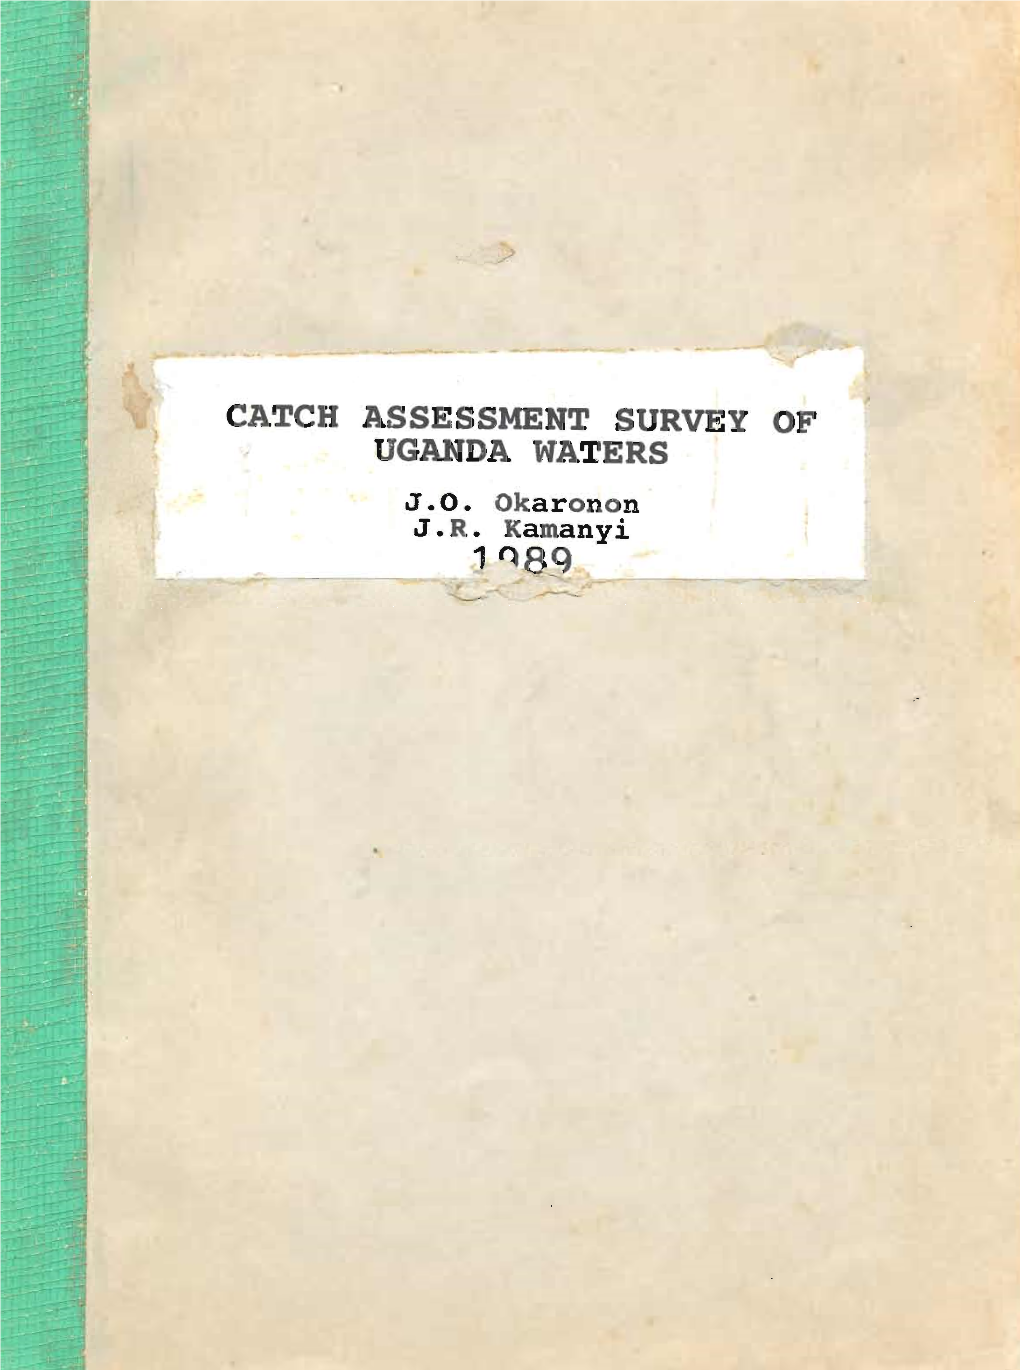 Catch Assessment Survey of Gar a Waters J.O